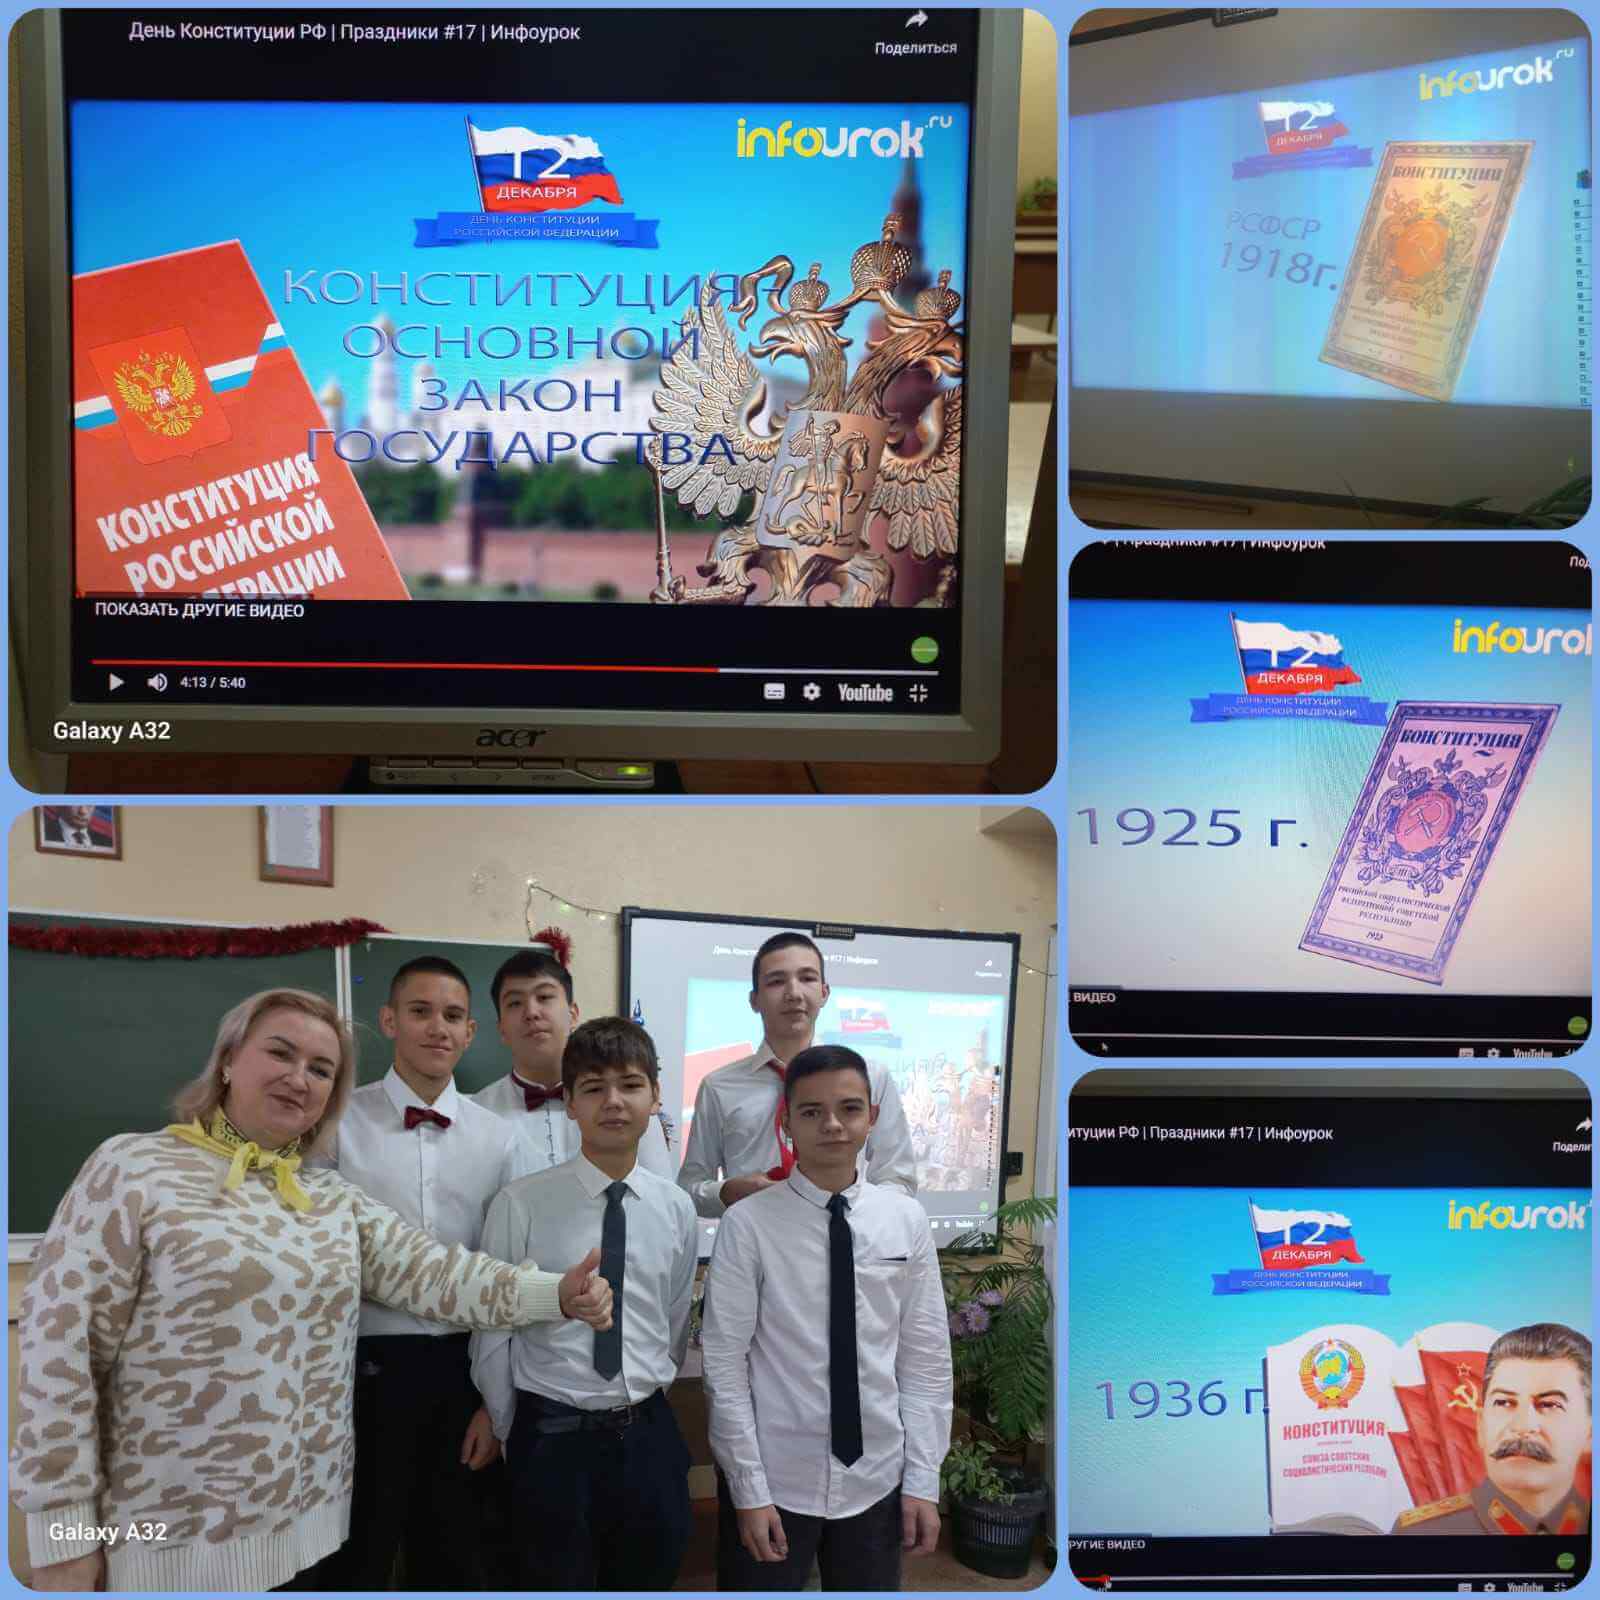 Всероссийский урок "РАЗГОВОРЫ О ВАЖНОМ" сегодня проходил на тему "ГЛАВНЫЙ ЗАКОН СТРАНЫ"